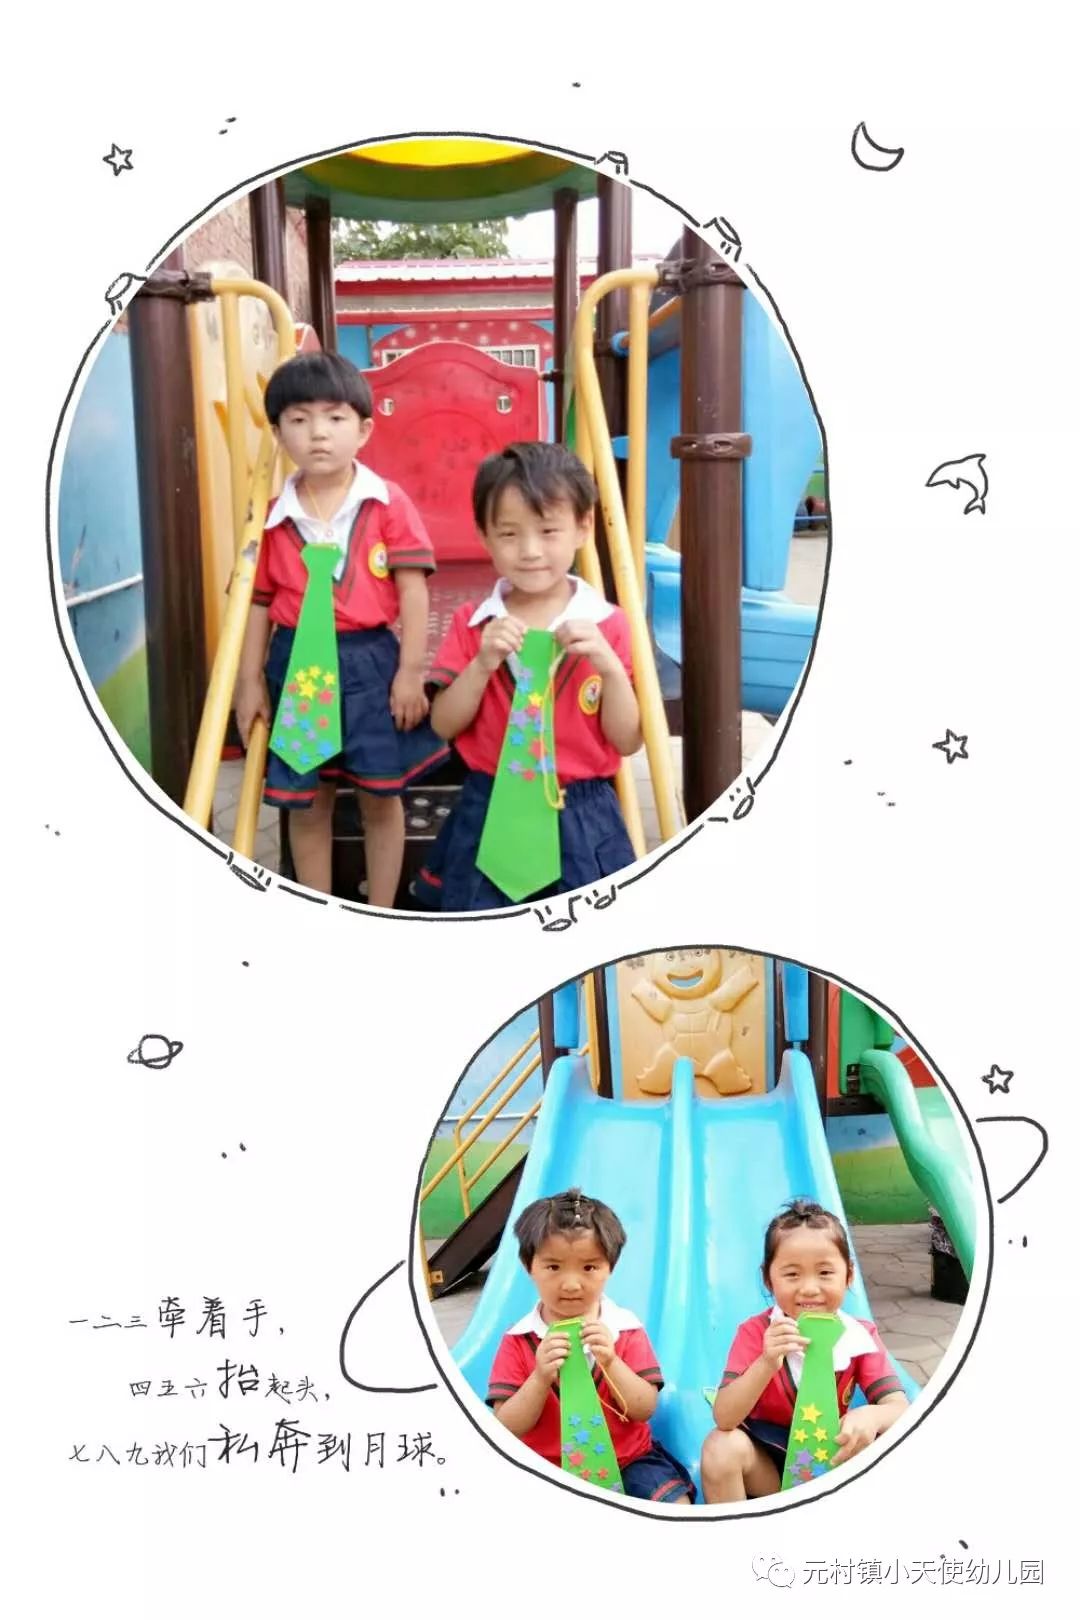 北京市昌平区快乐天使双语幼儿园 -招生-收费-幼儿园大全-贝聊